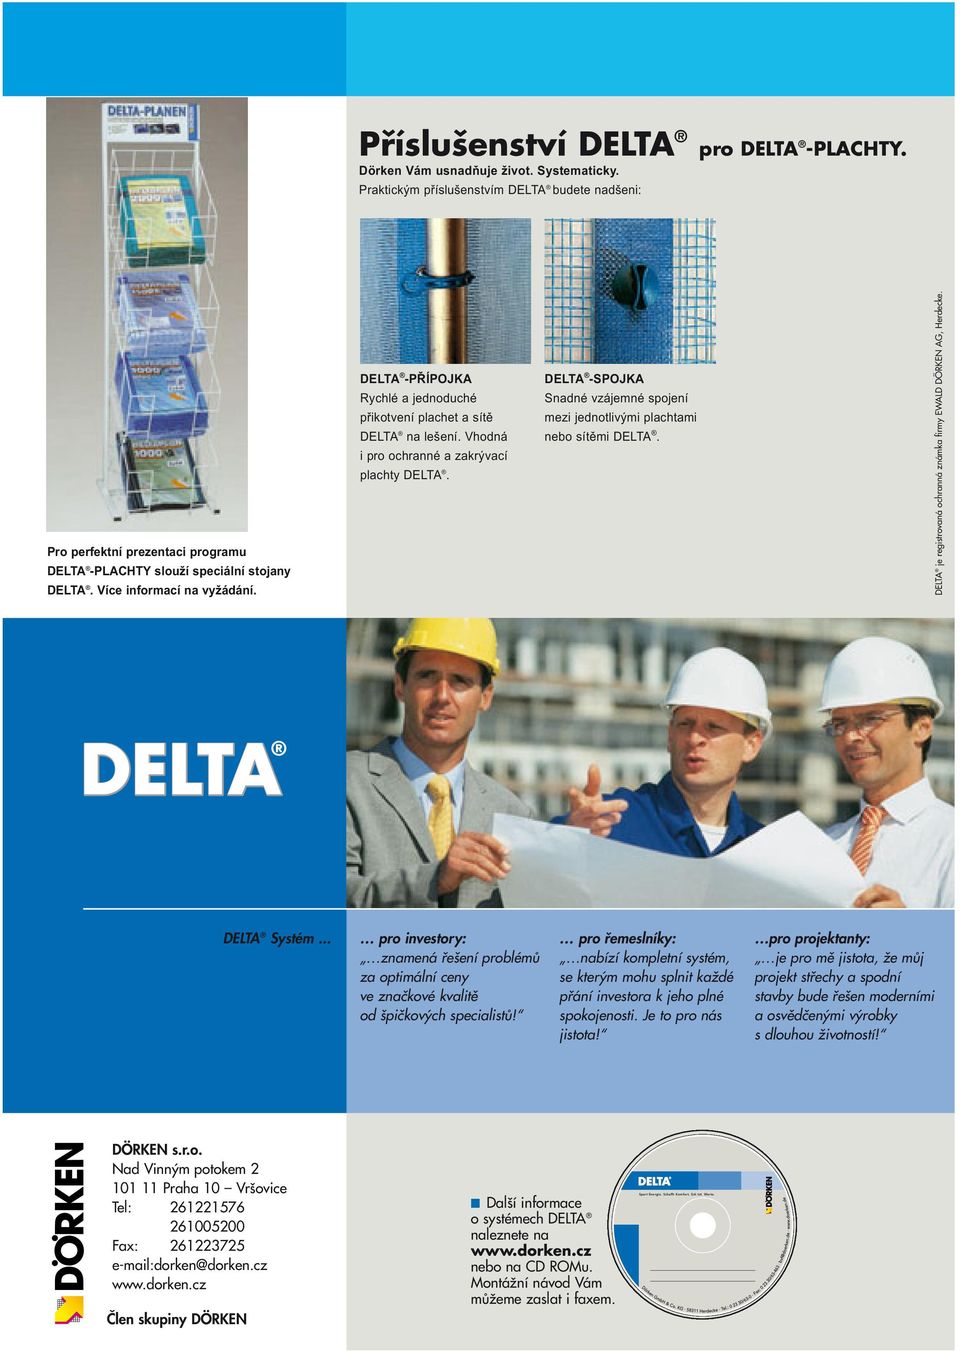 Vhodná i pro ochranné a zakrývací plachty DELTA. DELTA -SPOJKA Snadné vzájemné spojení mezi jednotlivými plachtami nebo sítěmi DELTA.